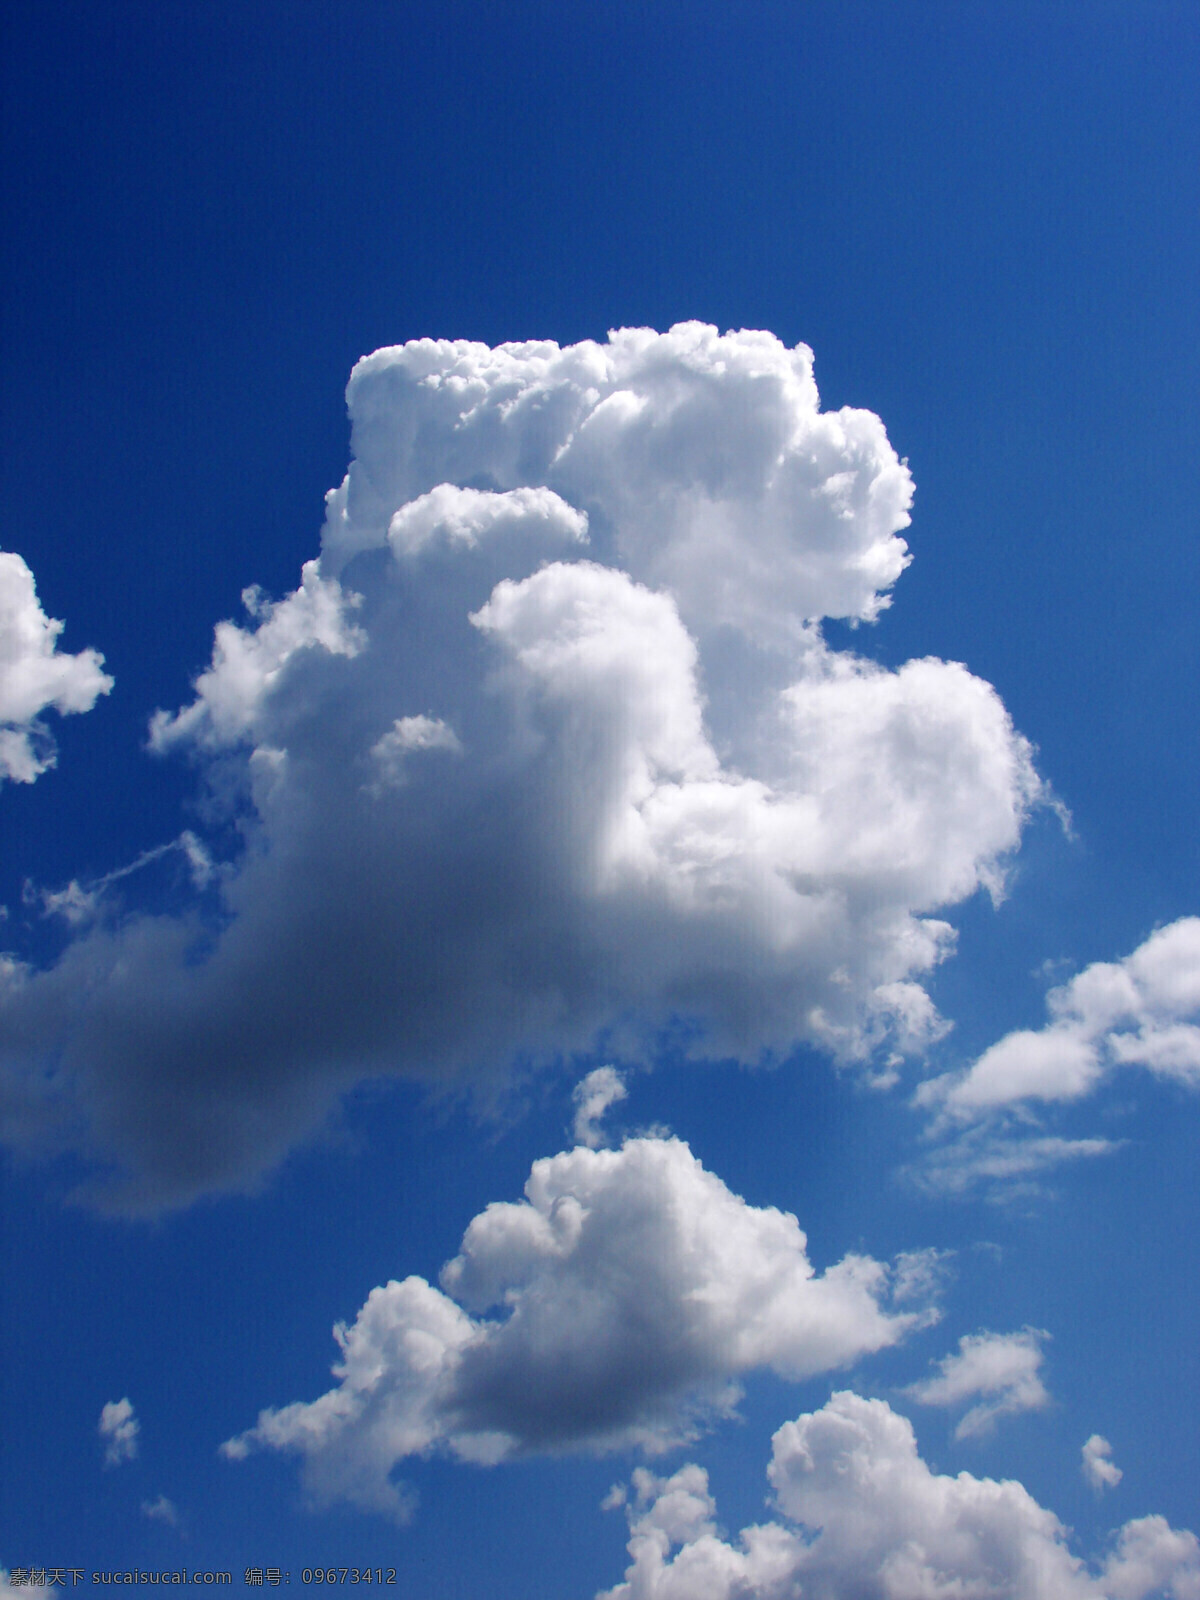 蓝天 白云 素材图片 白云边 天空 天空背景 天空背景图片 天空底图 天空素材 天空云彩 白云图片 白云朵